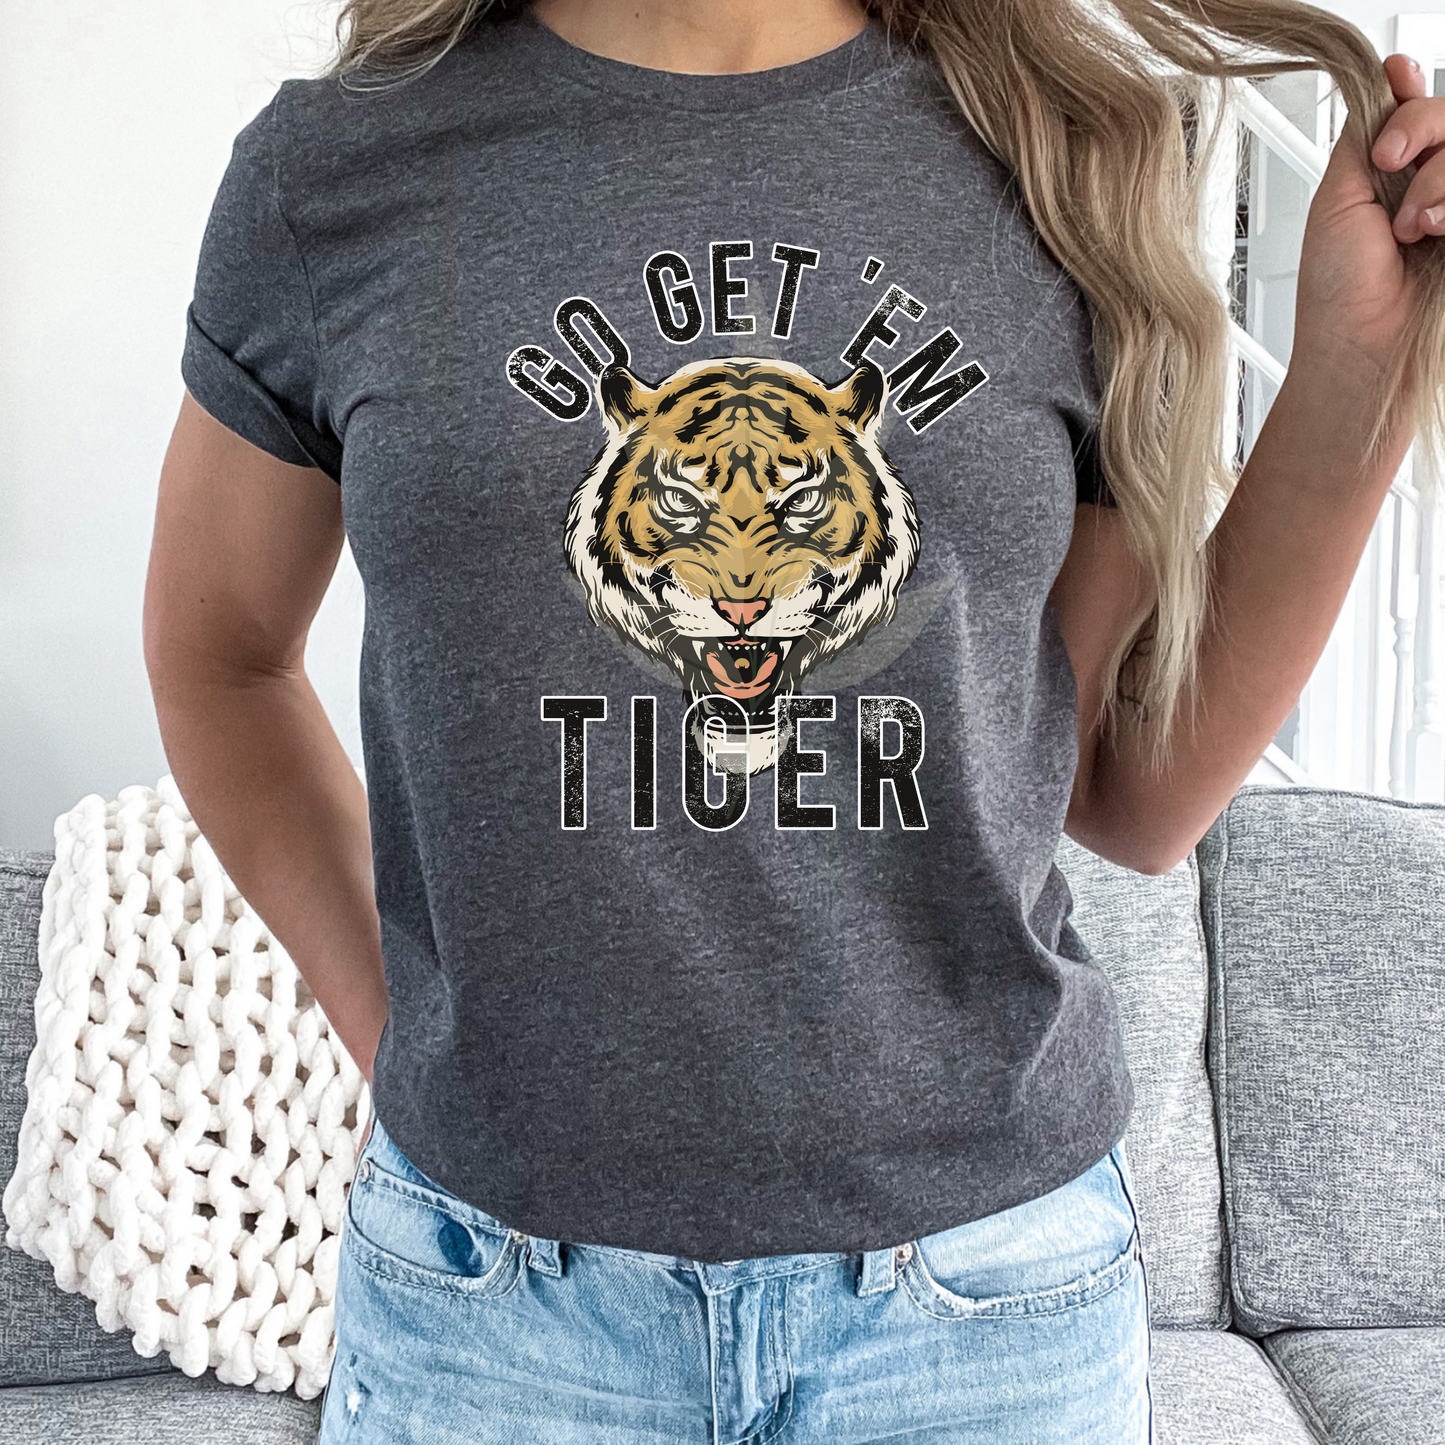 Go Get Em' Tiger